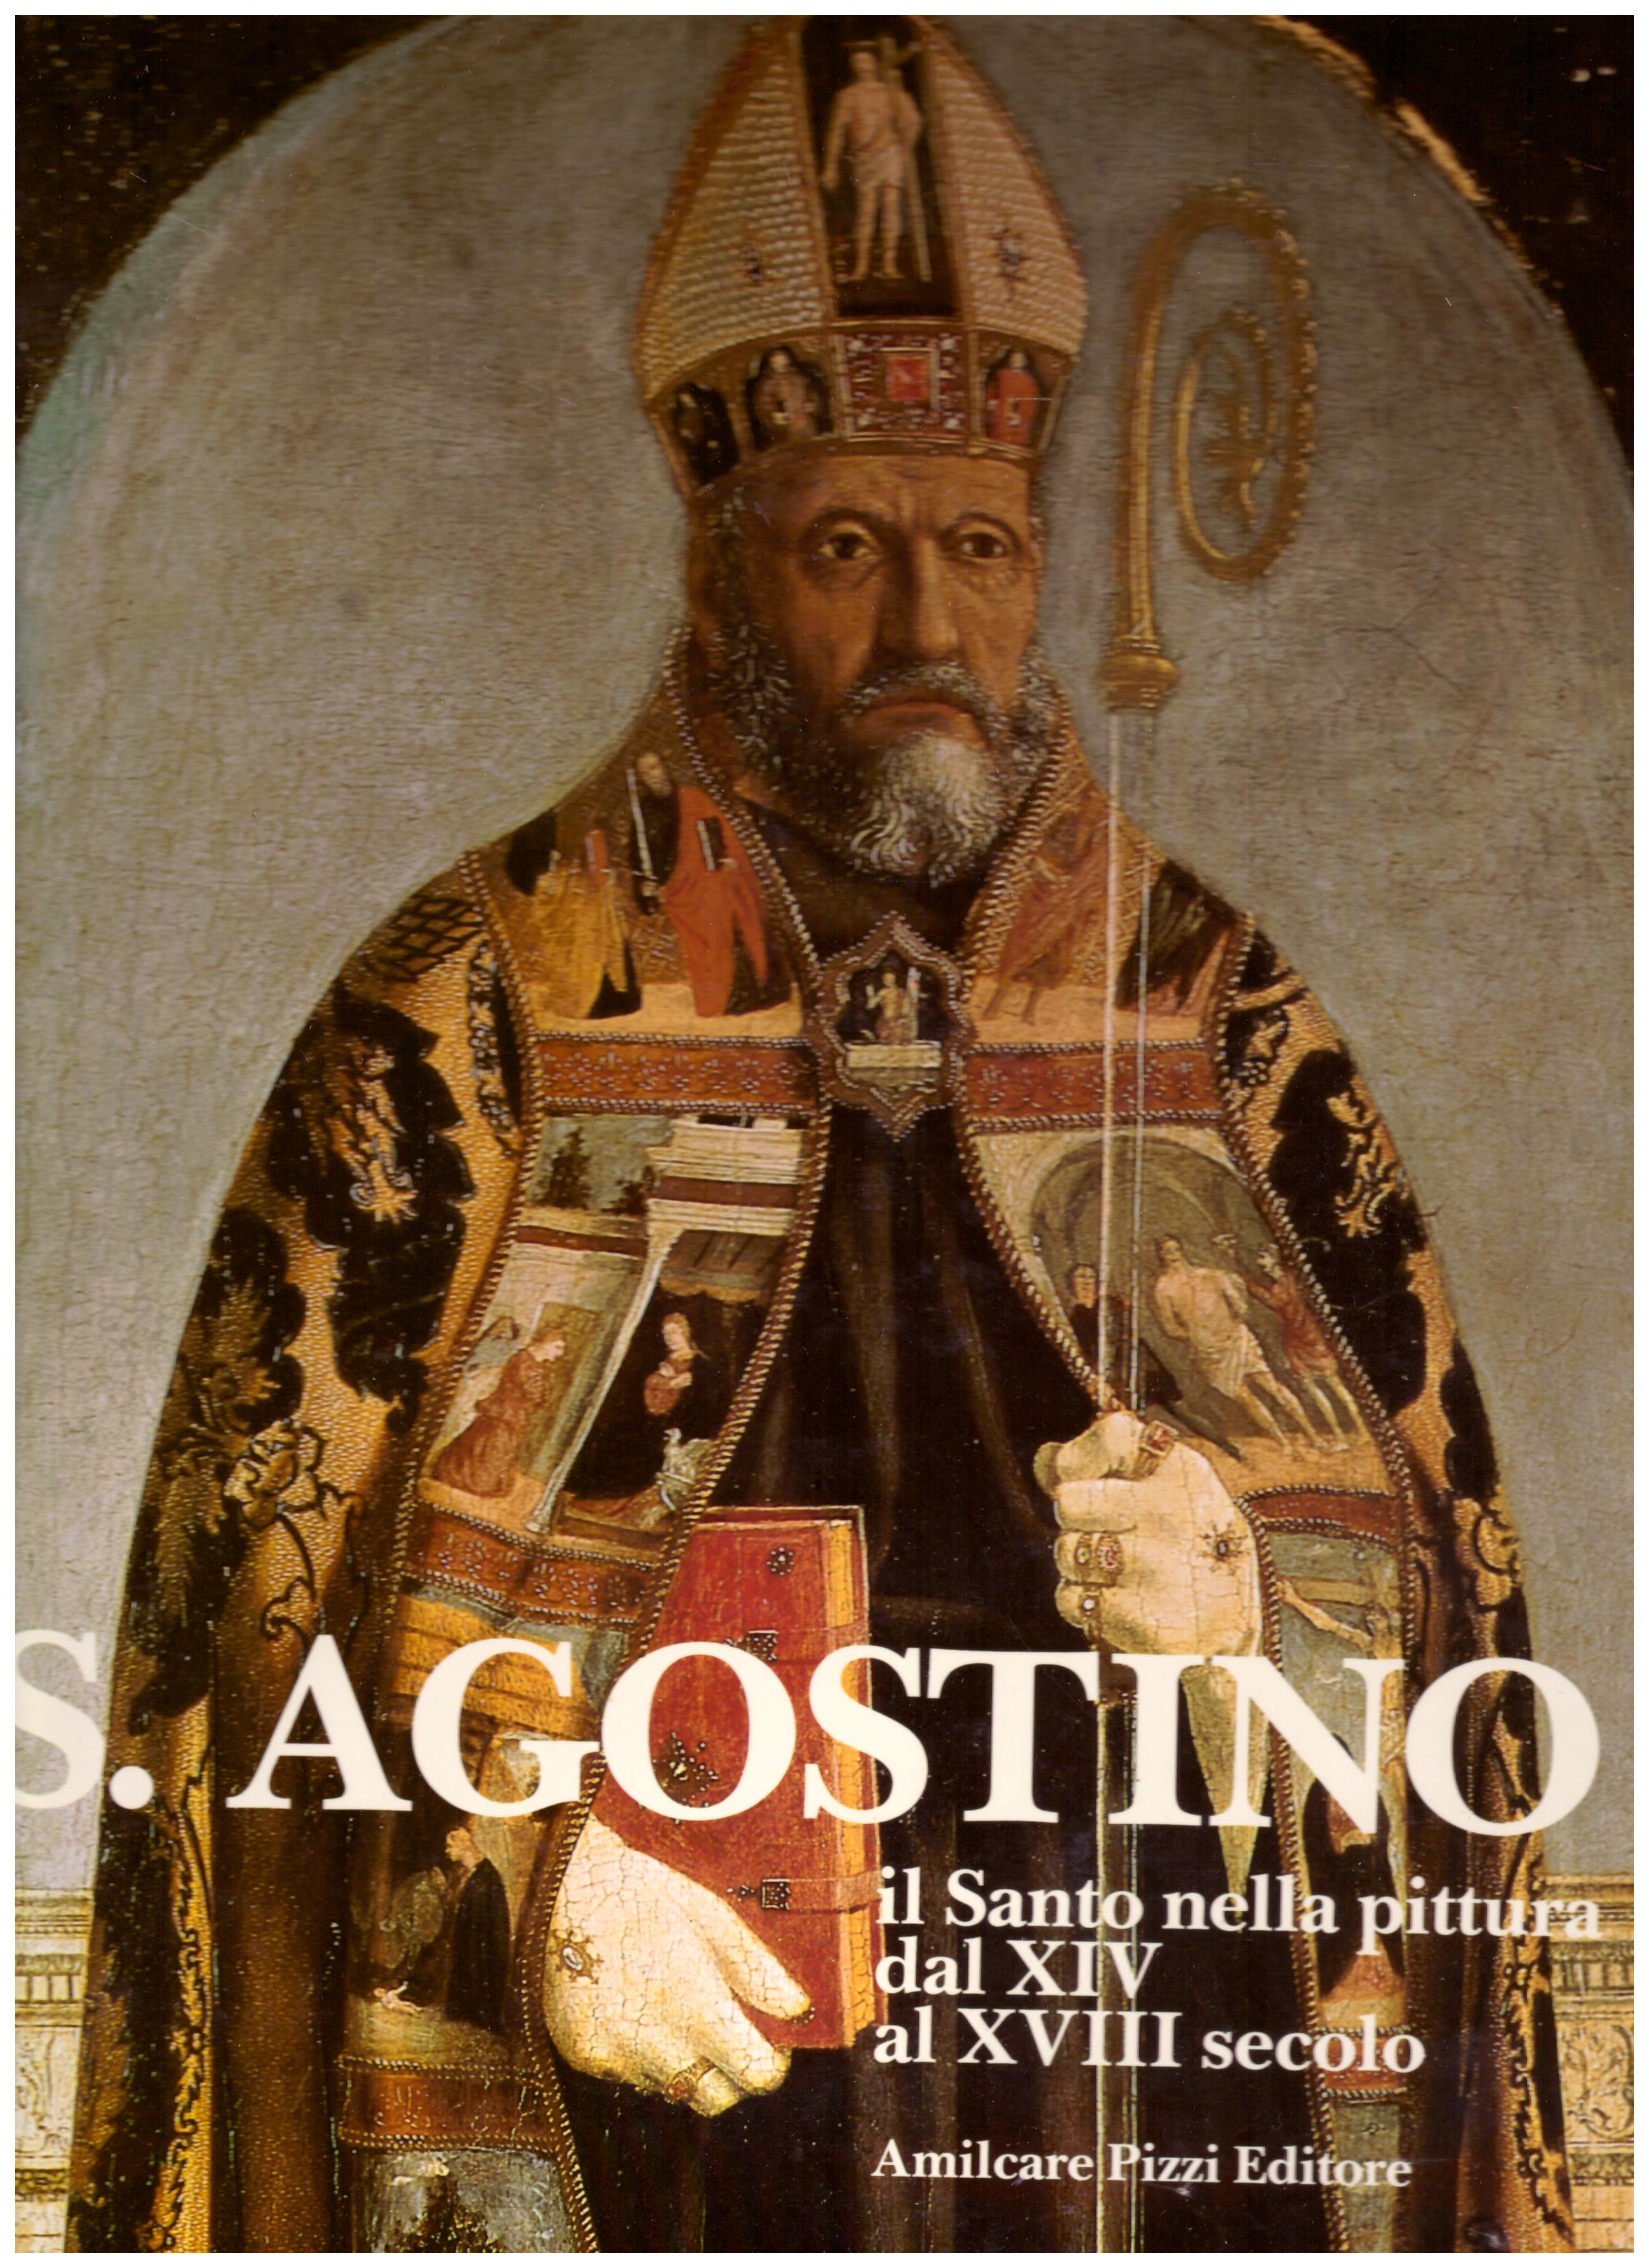 Titolo: S.Agostino il Santo nella pittura dal XIV alXVIII secolo Autore: AA.VV.  Editore: Amilcare Pizzi editore, 1988